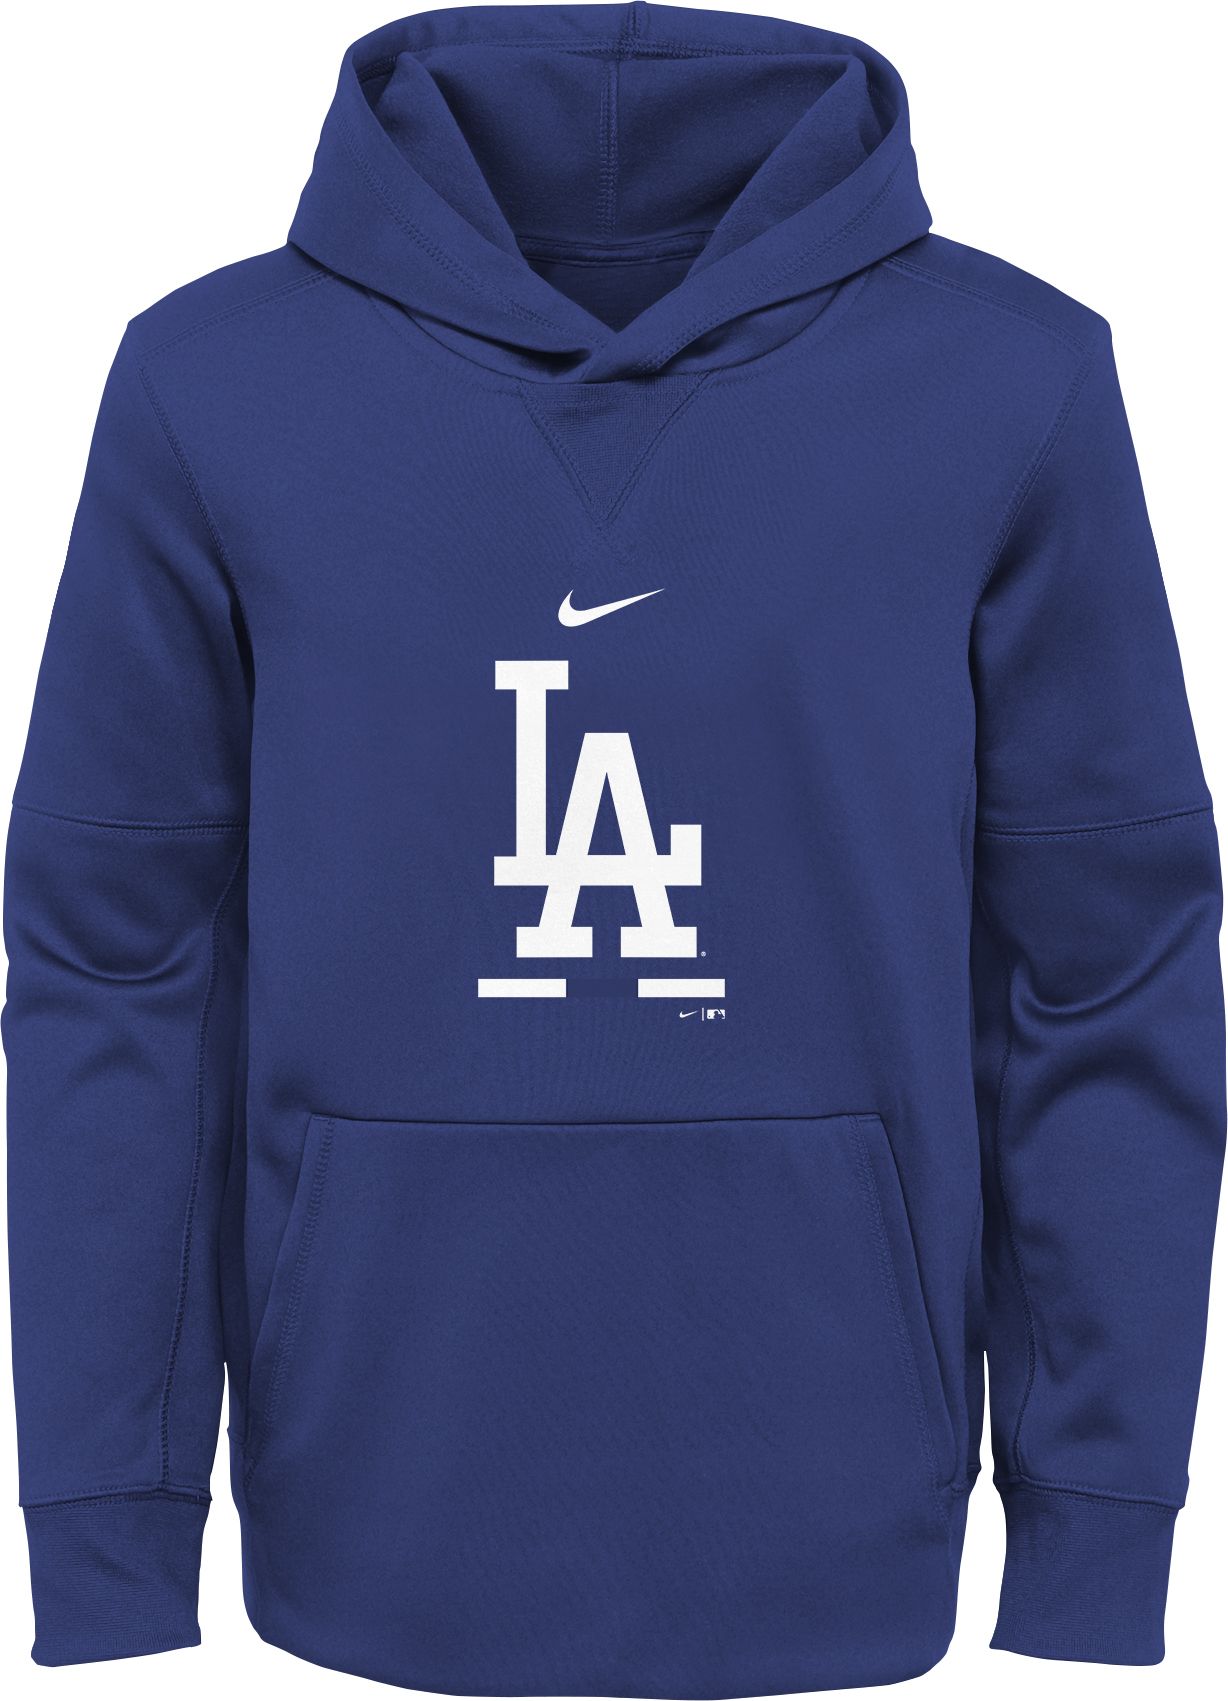 L.A. Dodgers Hoodies, Dodgers Sweatshirts, Fleece